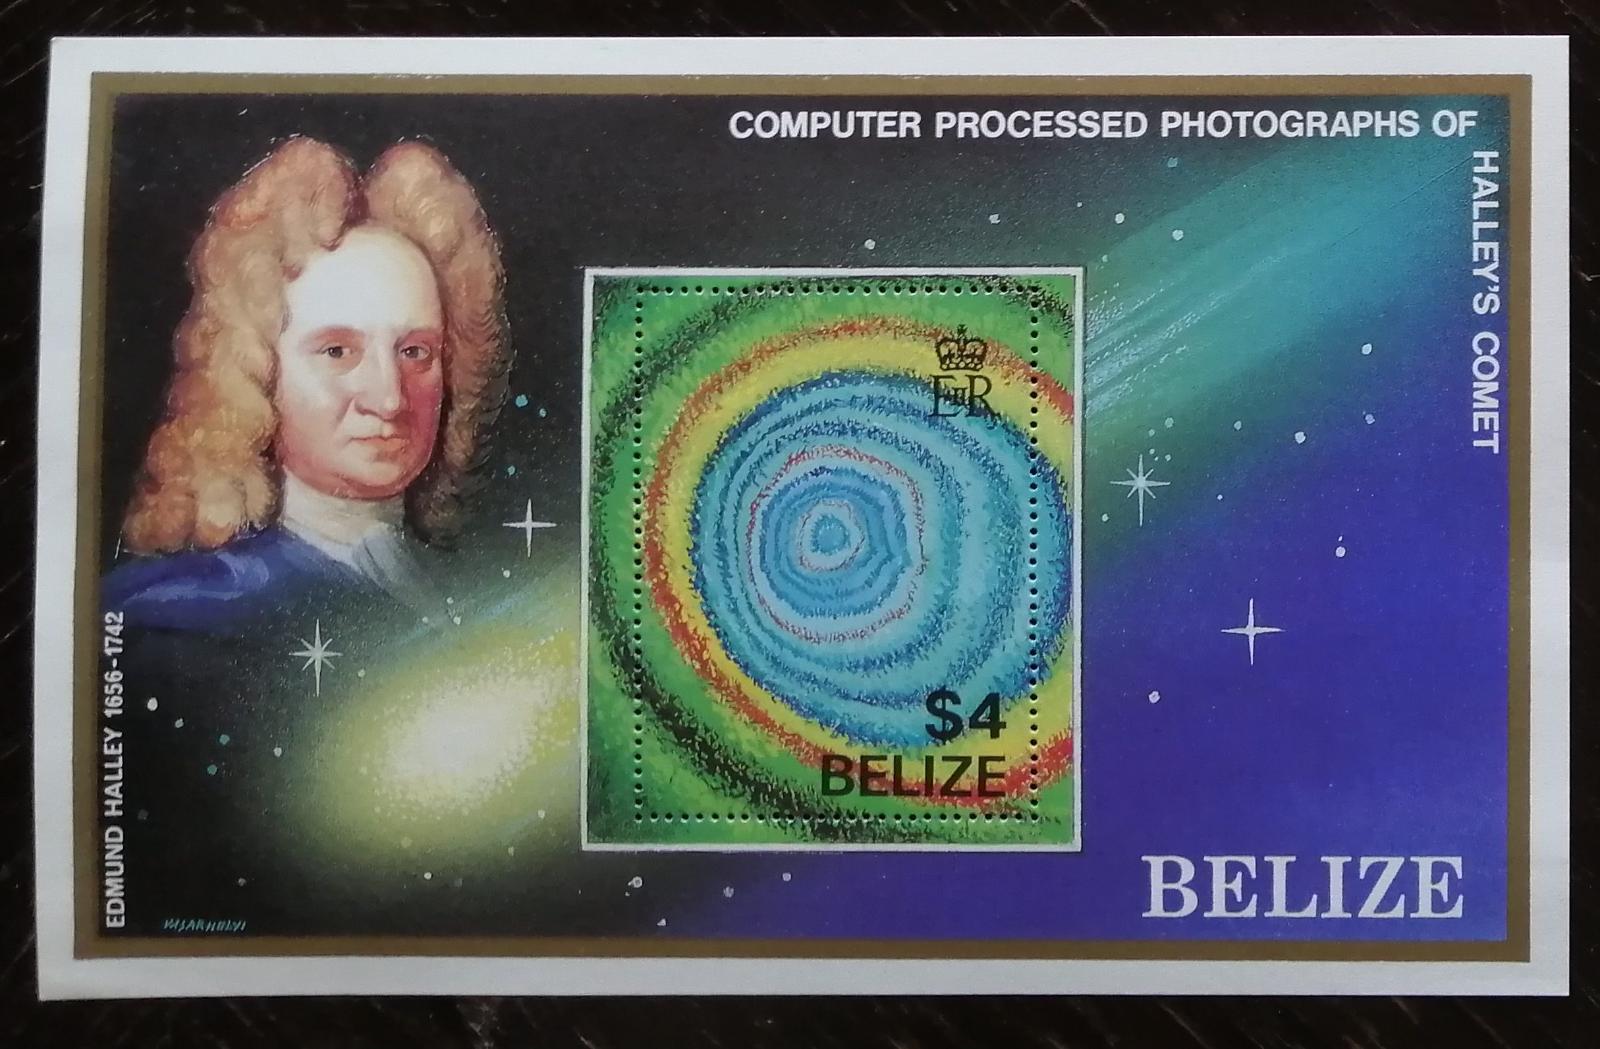 Belize 1986 - svěží aršík, Halleyova kometa, kosmos, astronomie 6£ - Známky